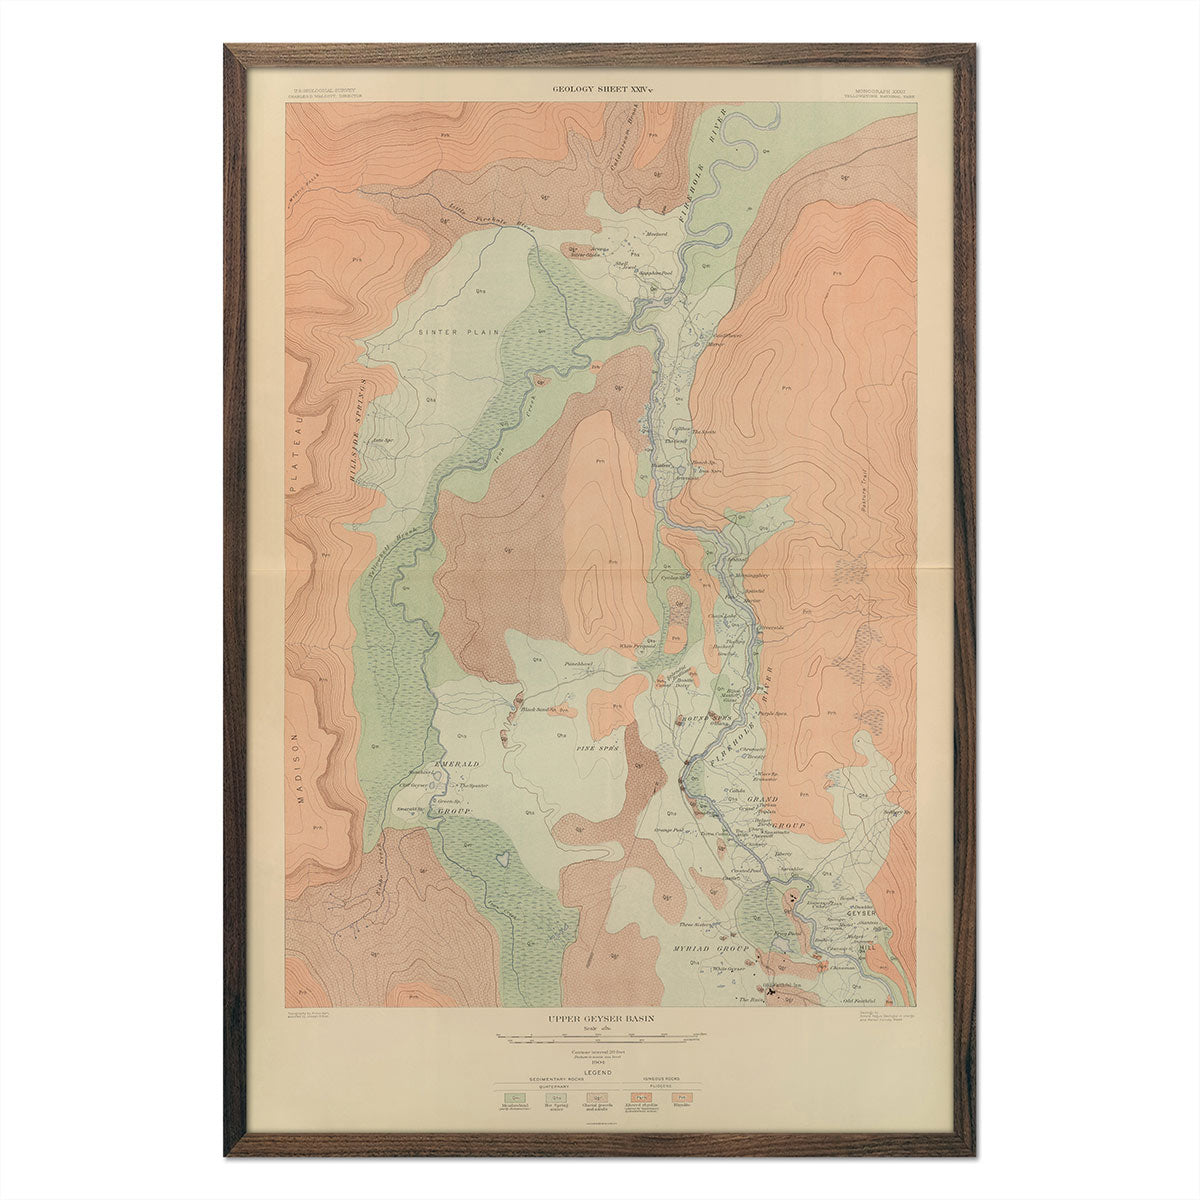 Upper Geyser Basin 1904 Yellowstone Geologic Map